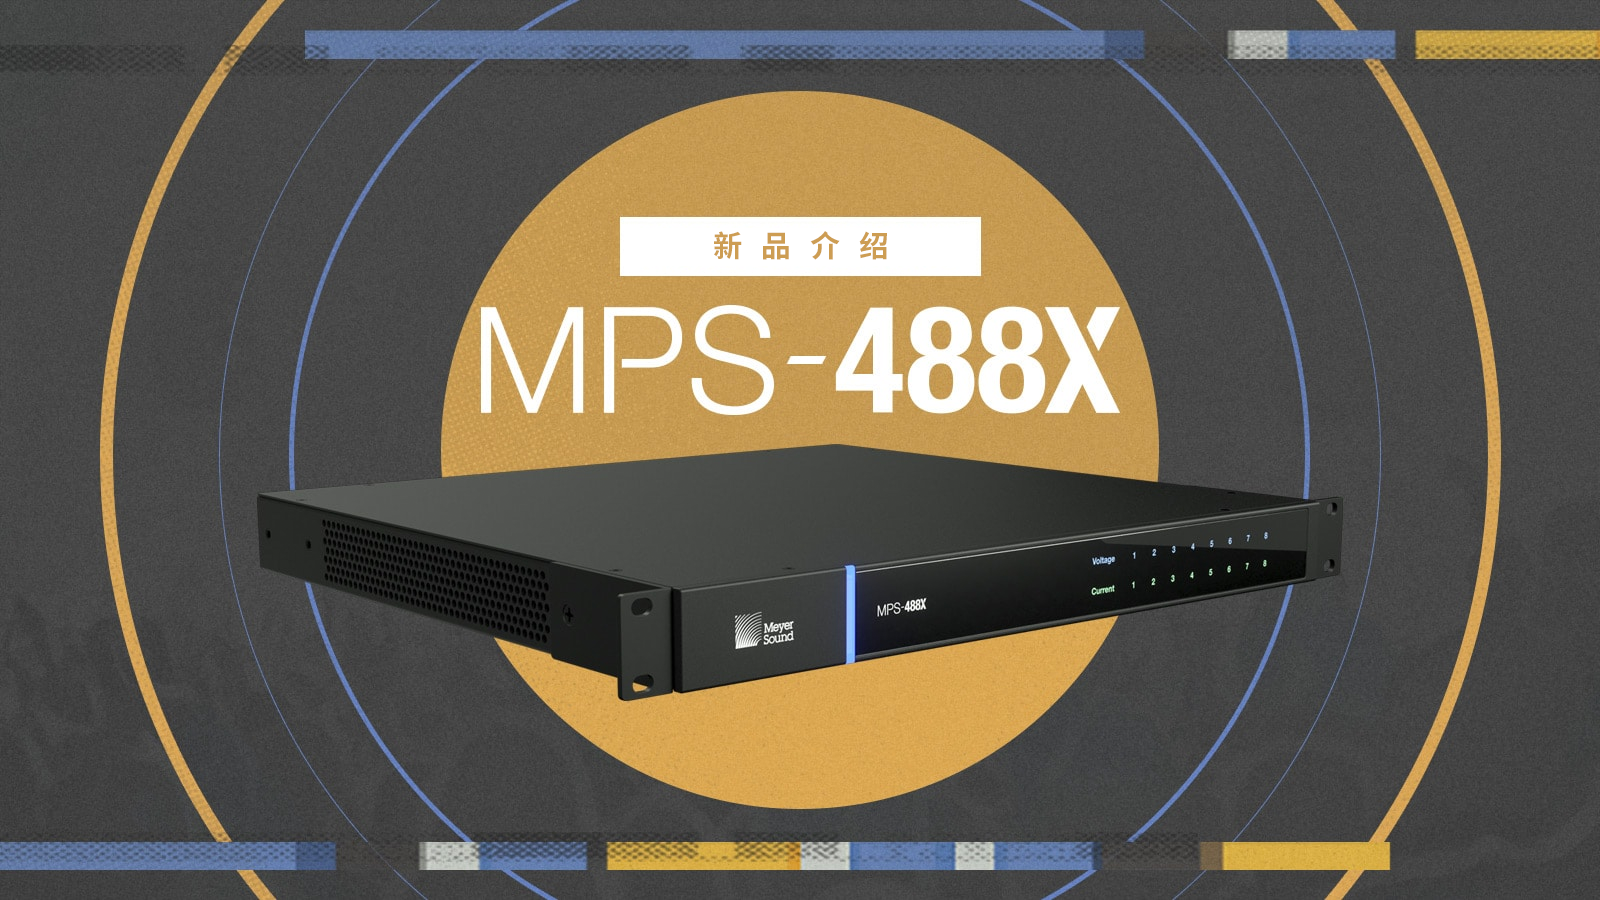 新品 MPS-488X 电源